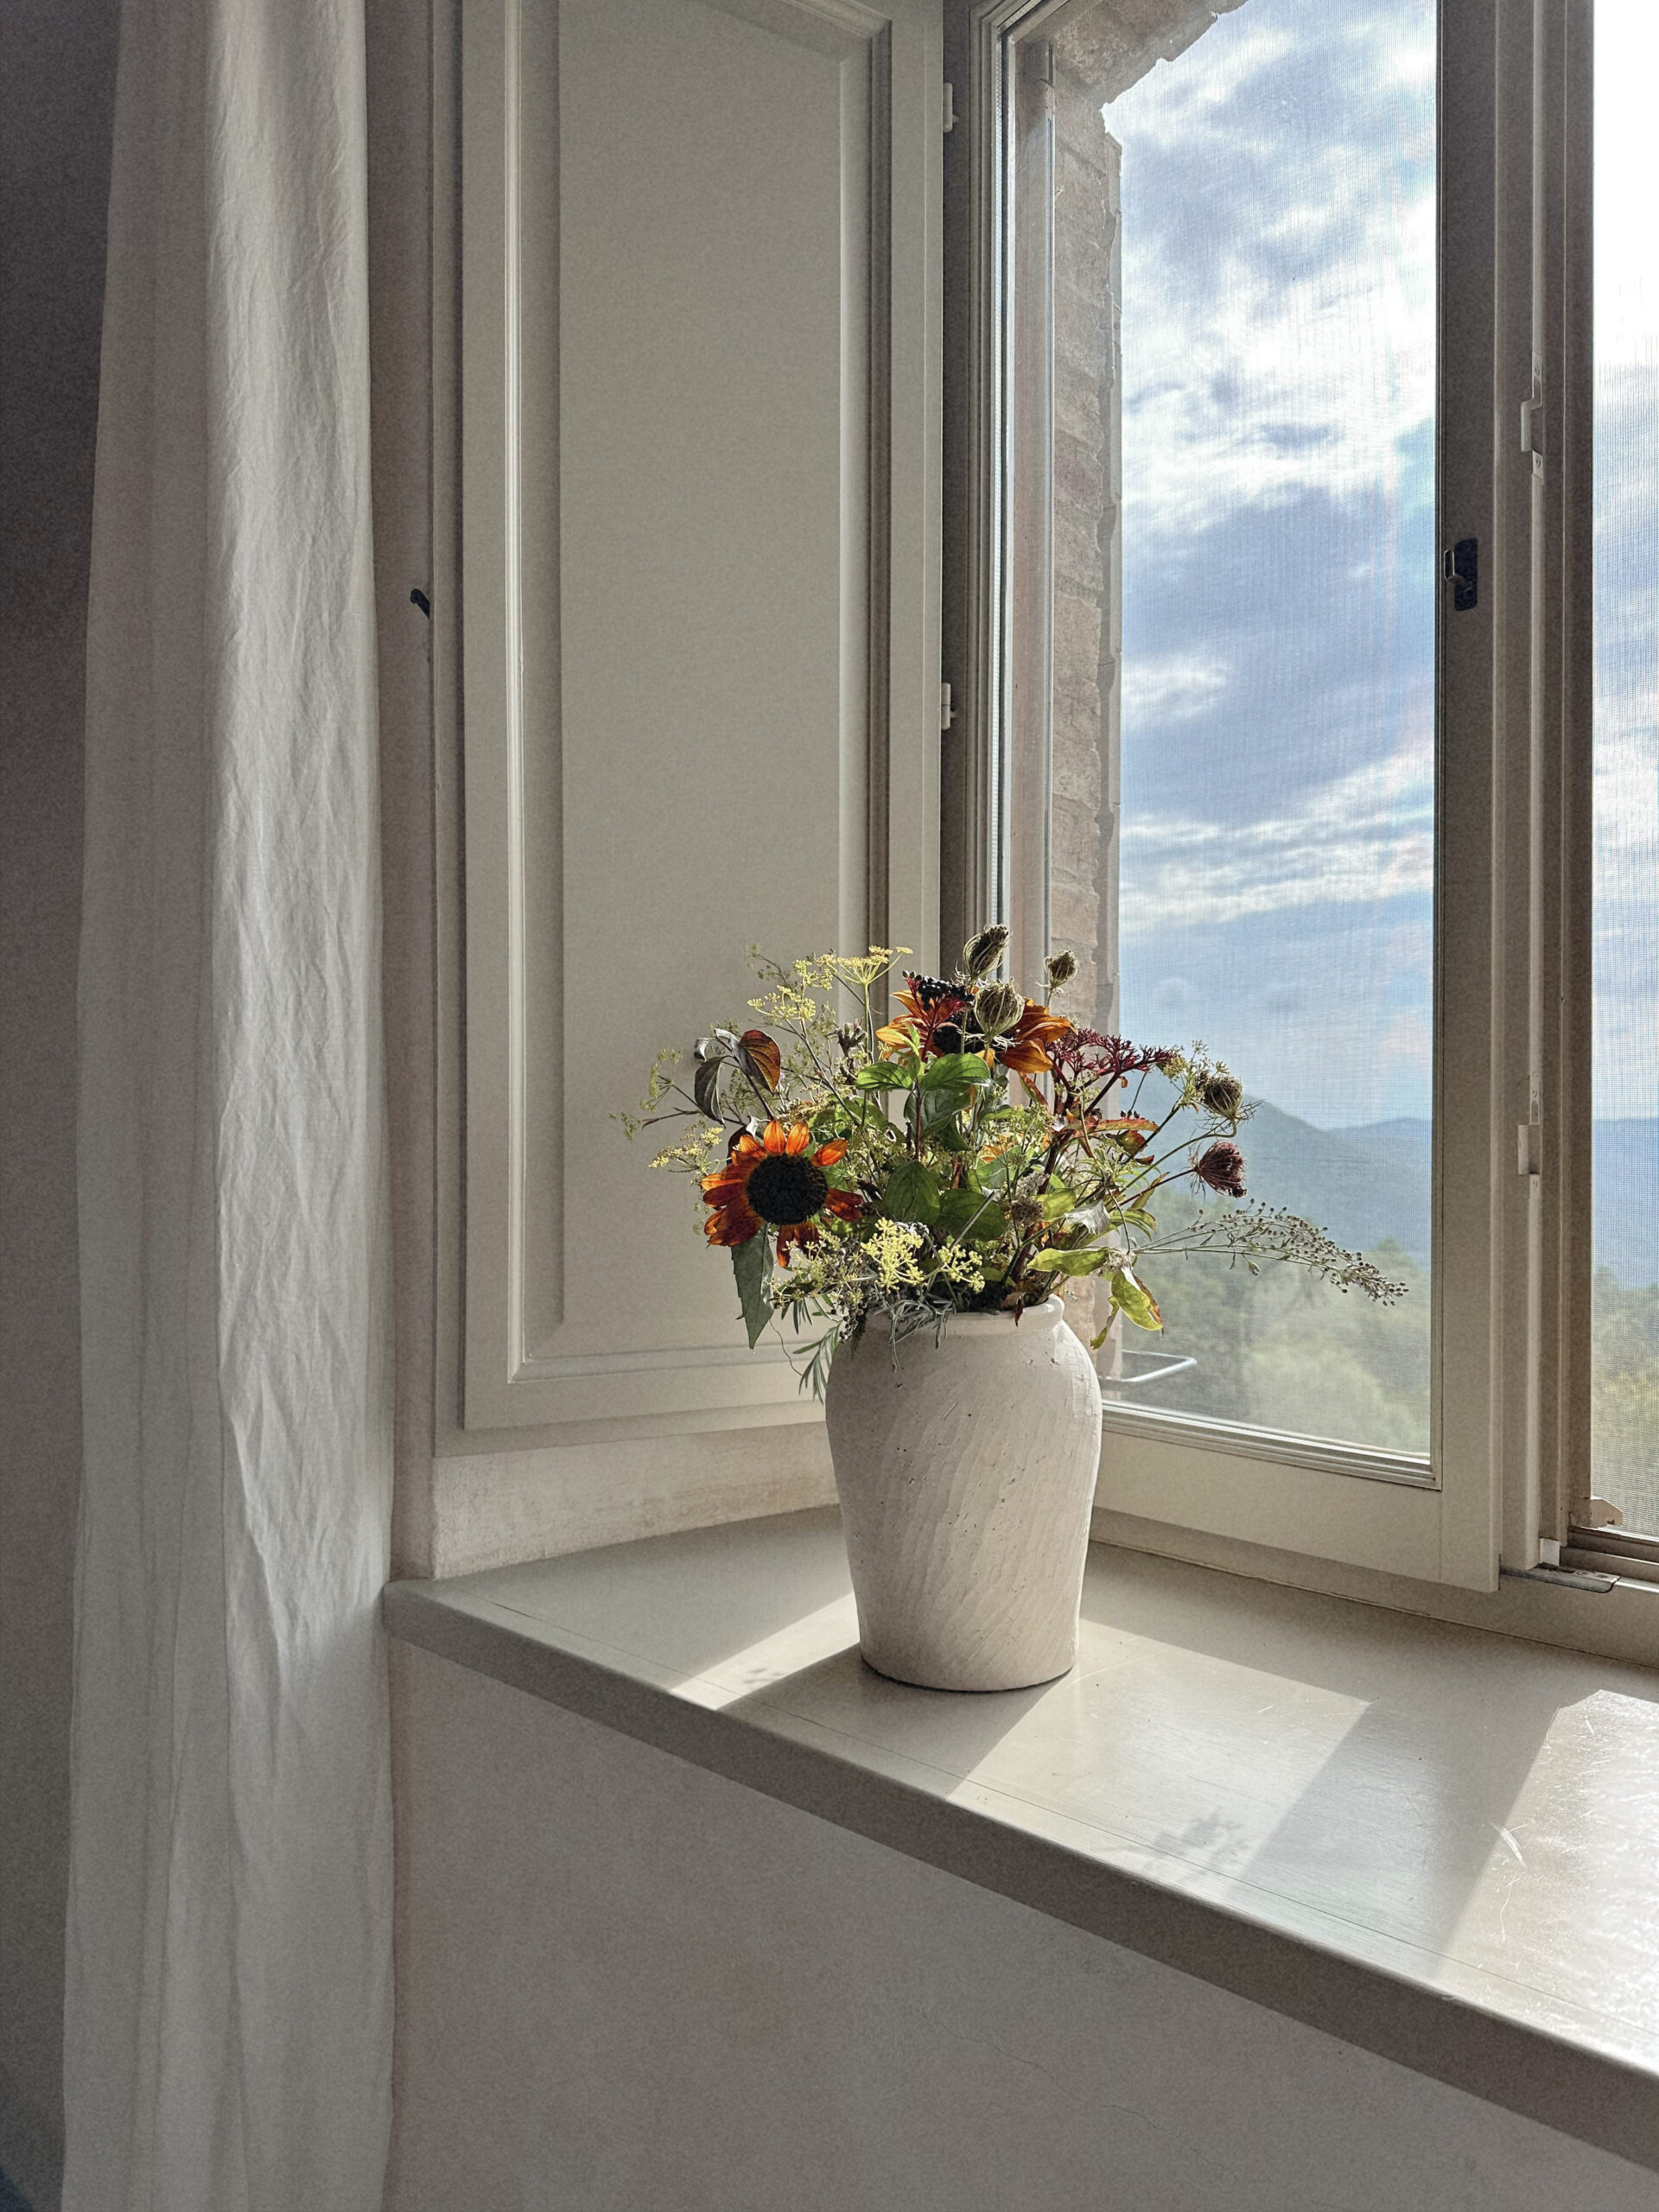 Flowers on a window ledge looking outside